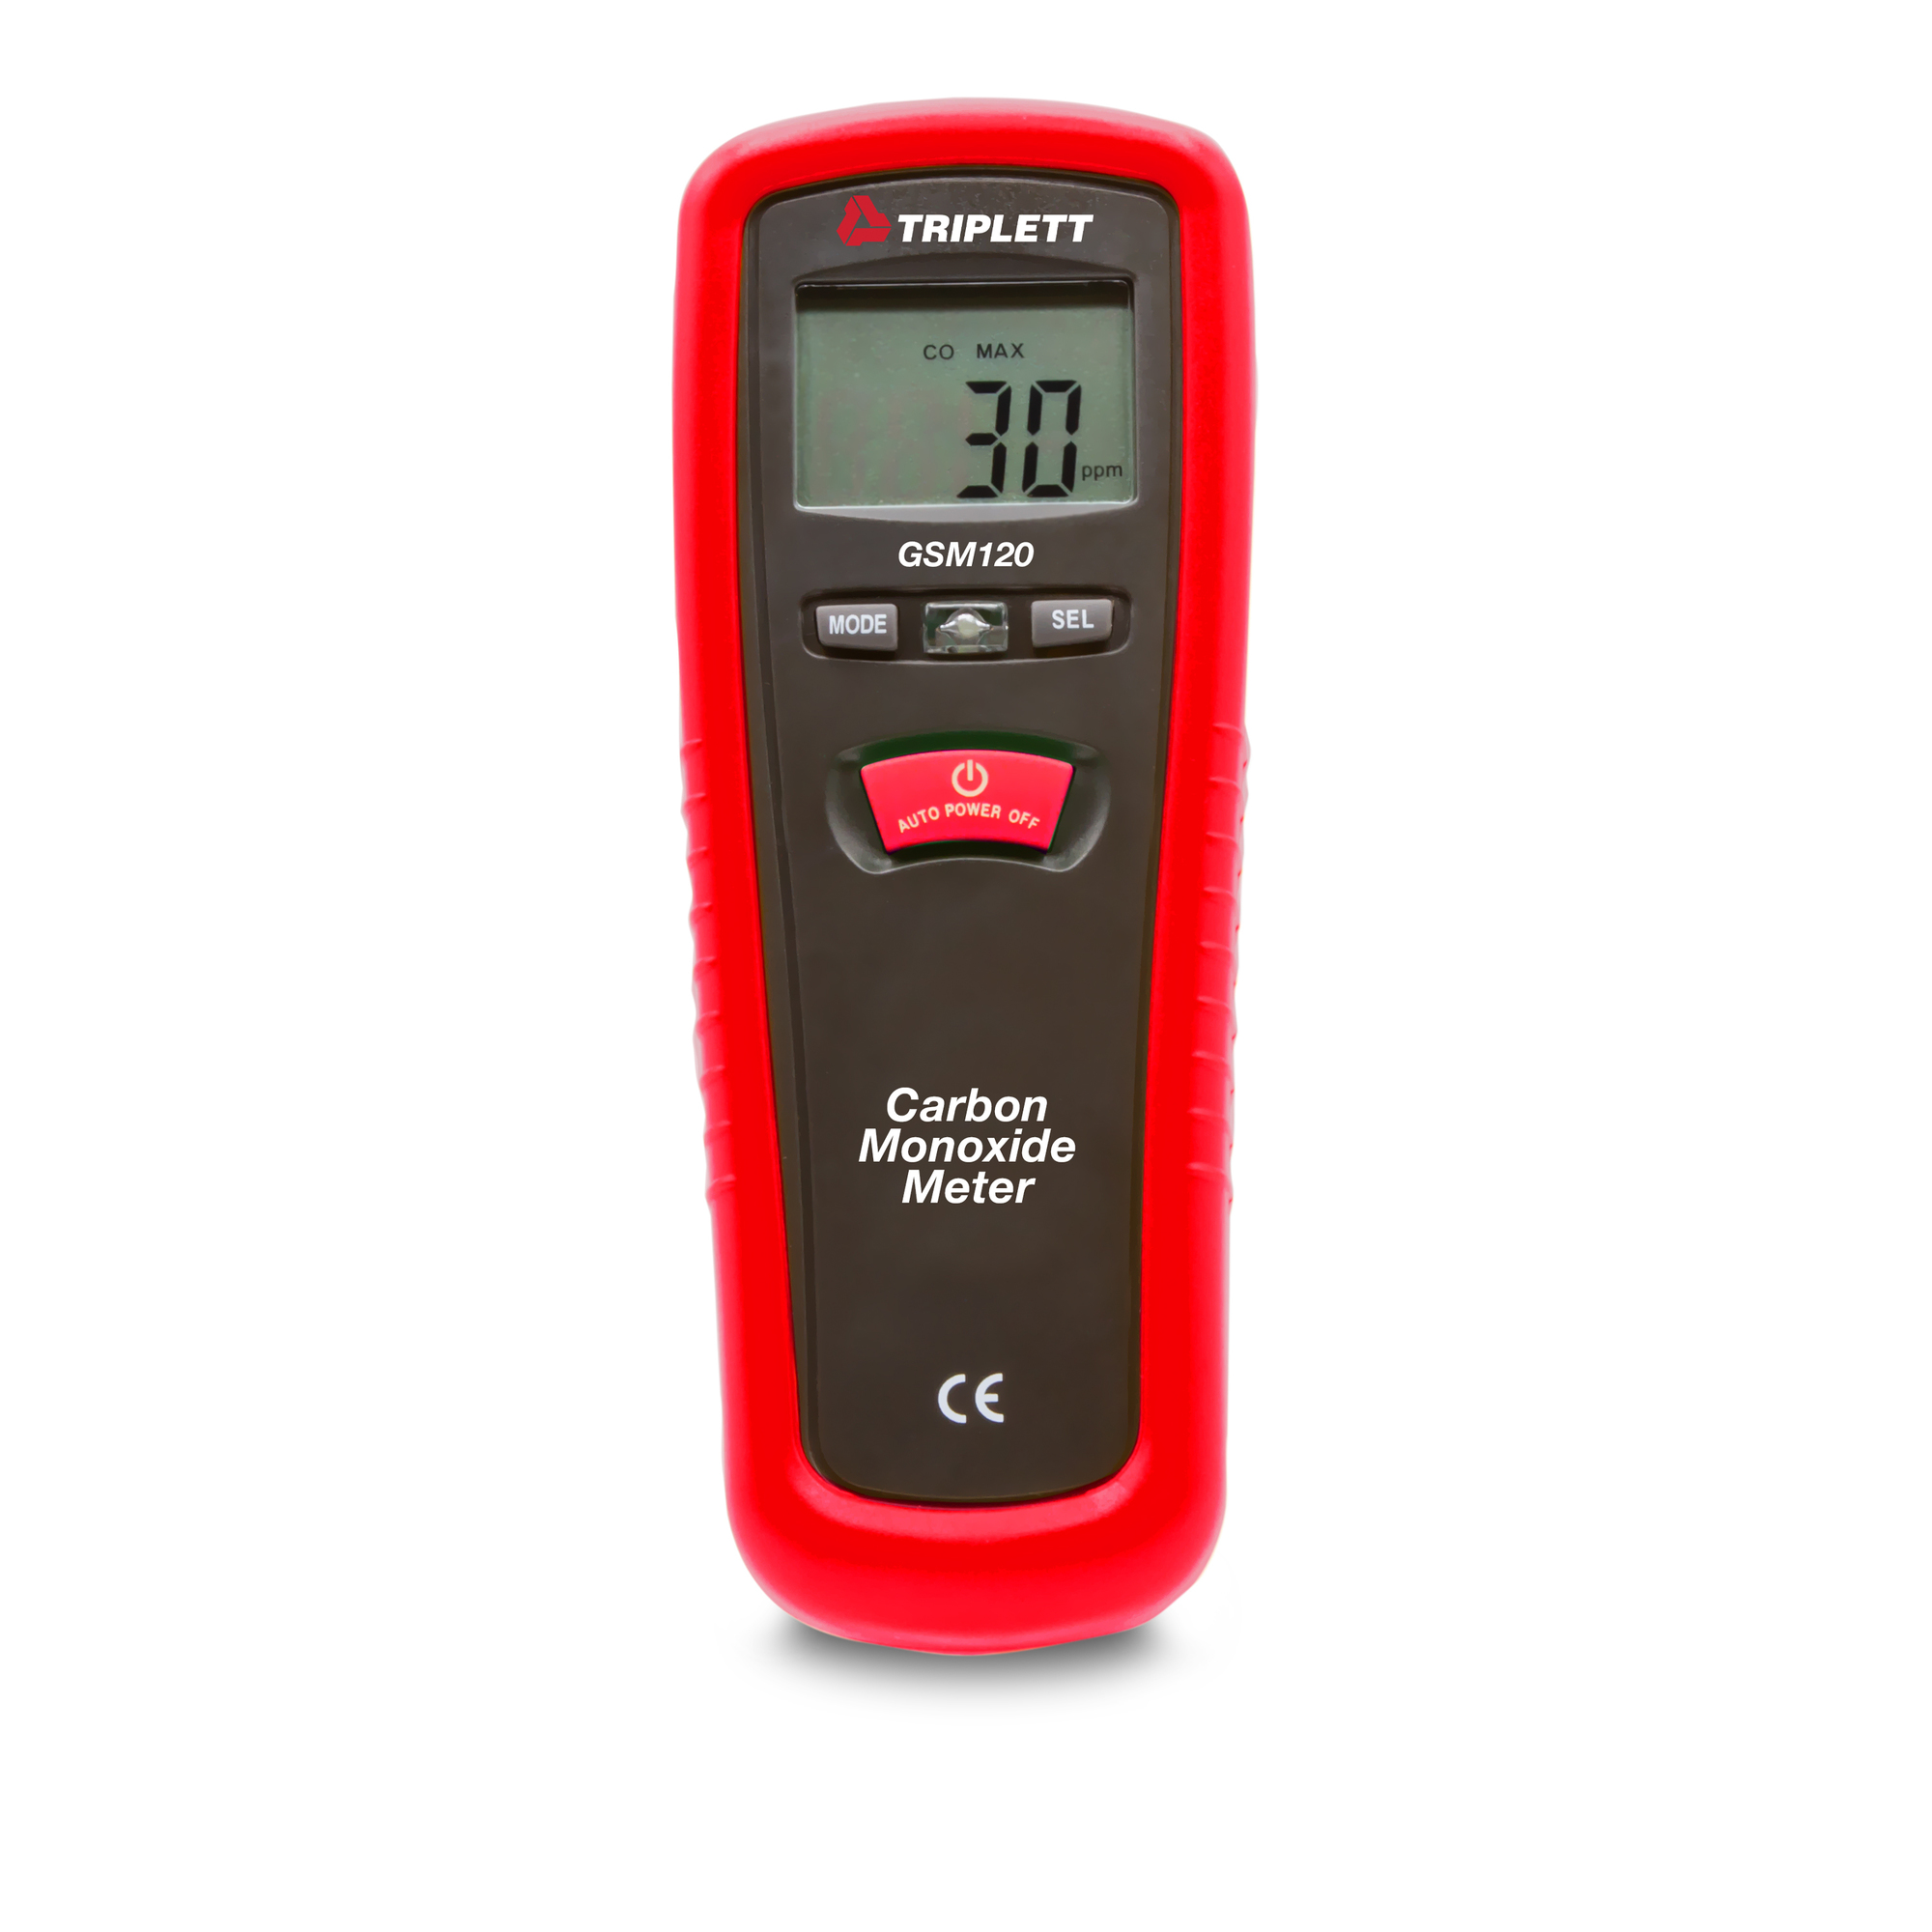 Triplett, Portable Carbon Monoxide (CO) Meter, Model GSM120